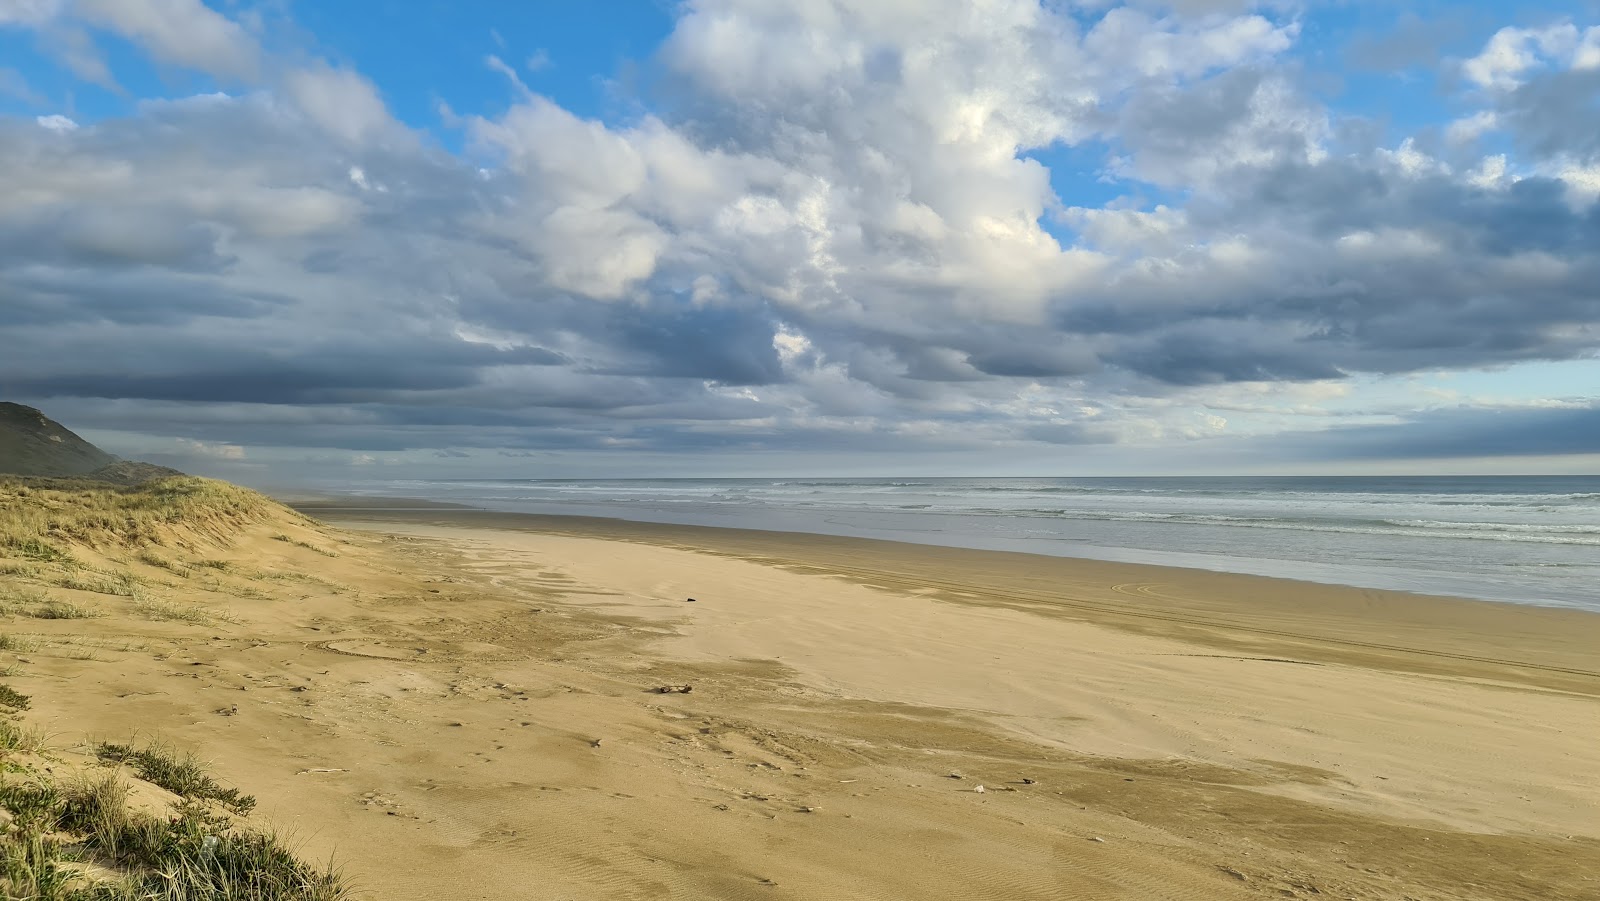 Foto di Glinks Gully Beach con una superficie del sabbia fine e luminosa